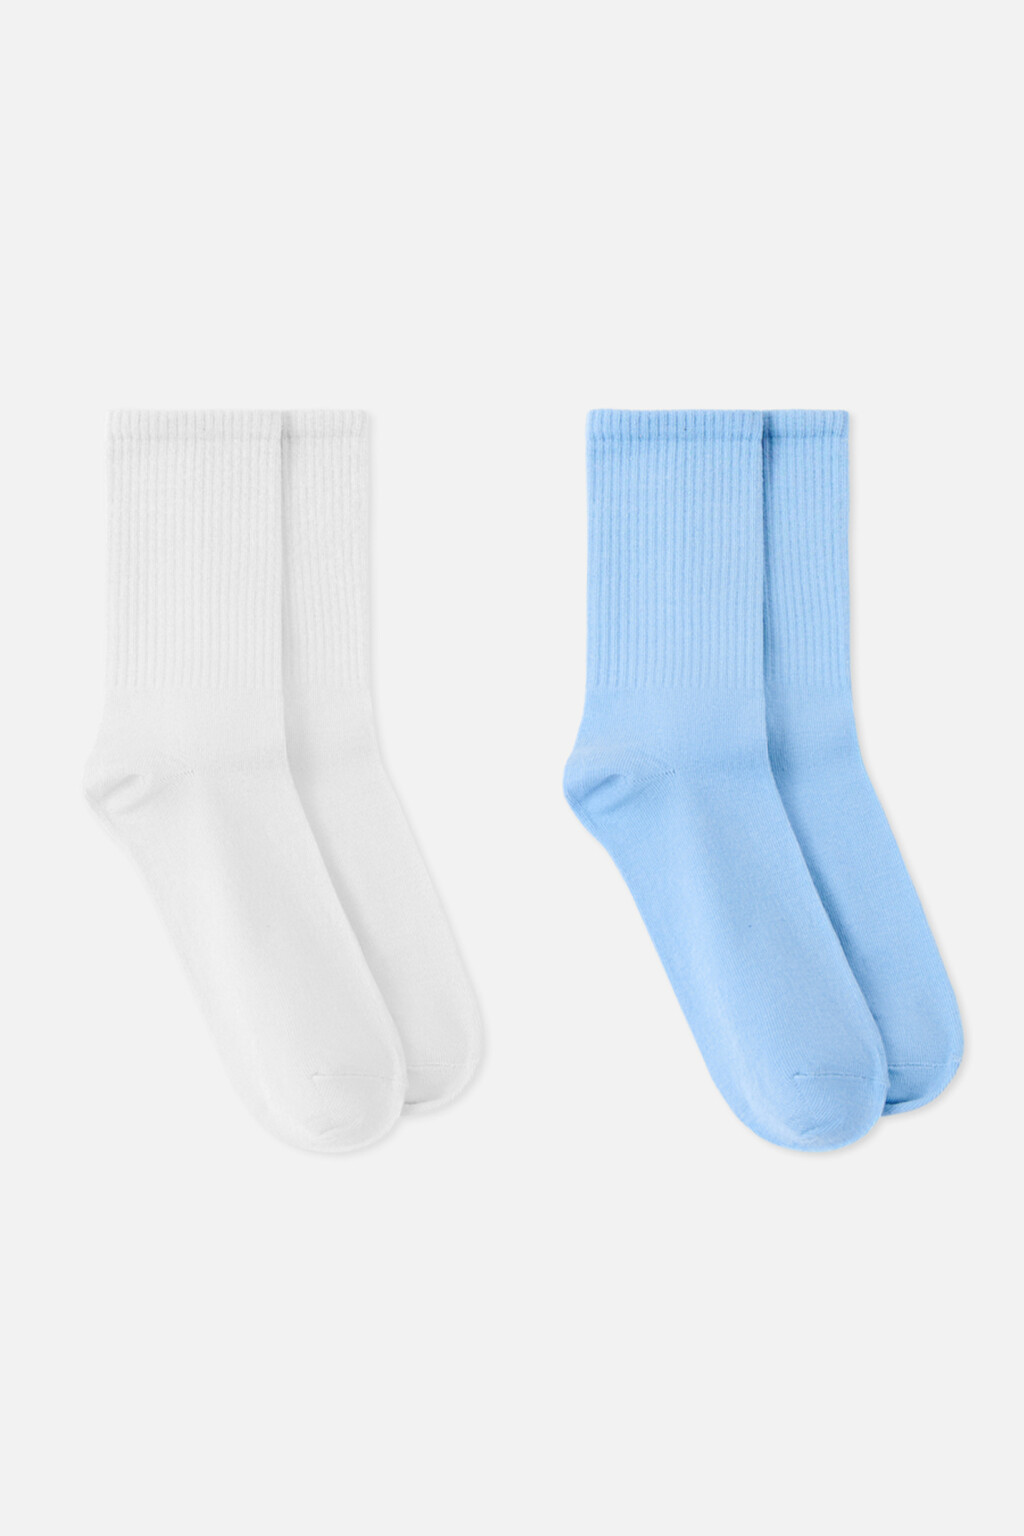 набор носков для мужчин